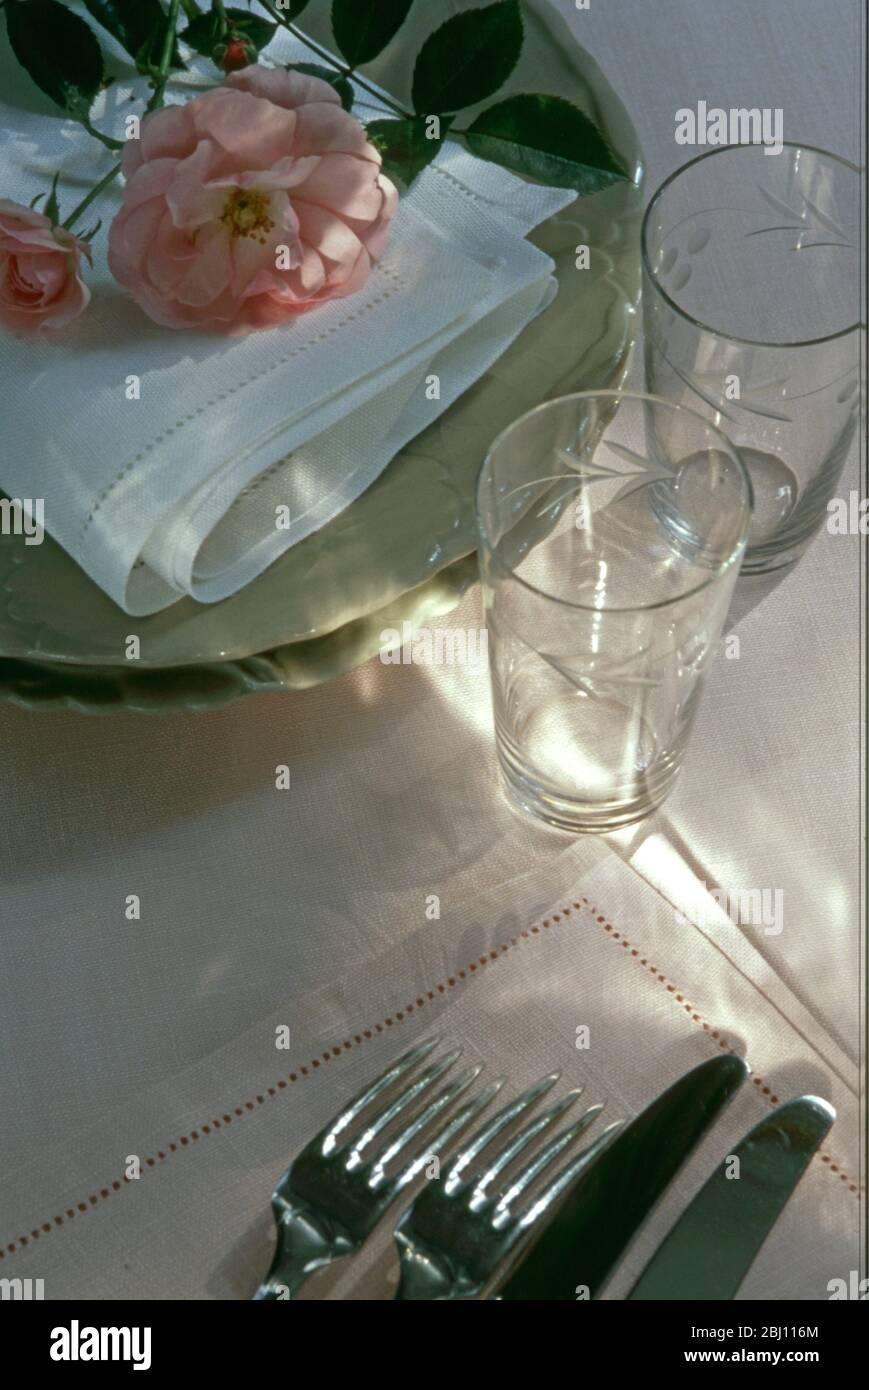 Bereiten Sie sich auf Tisch für eine Dinnerparty legen, wählen Gläser Besteck Teller und Servietten mit frisch gepflückten Rose - Stockfoto